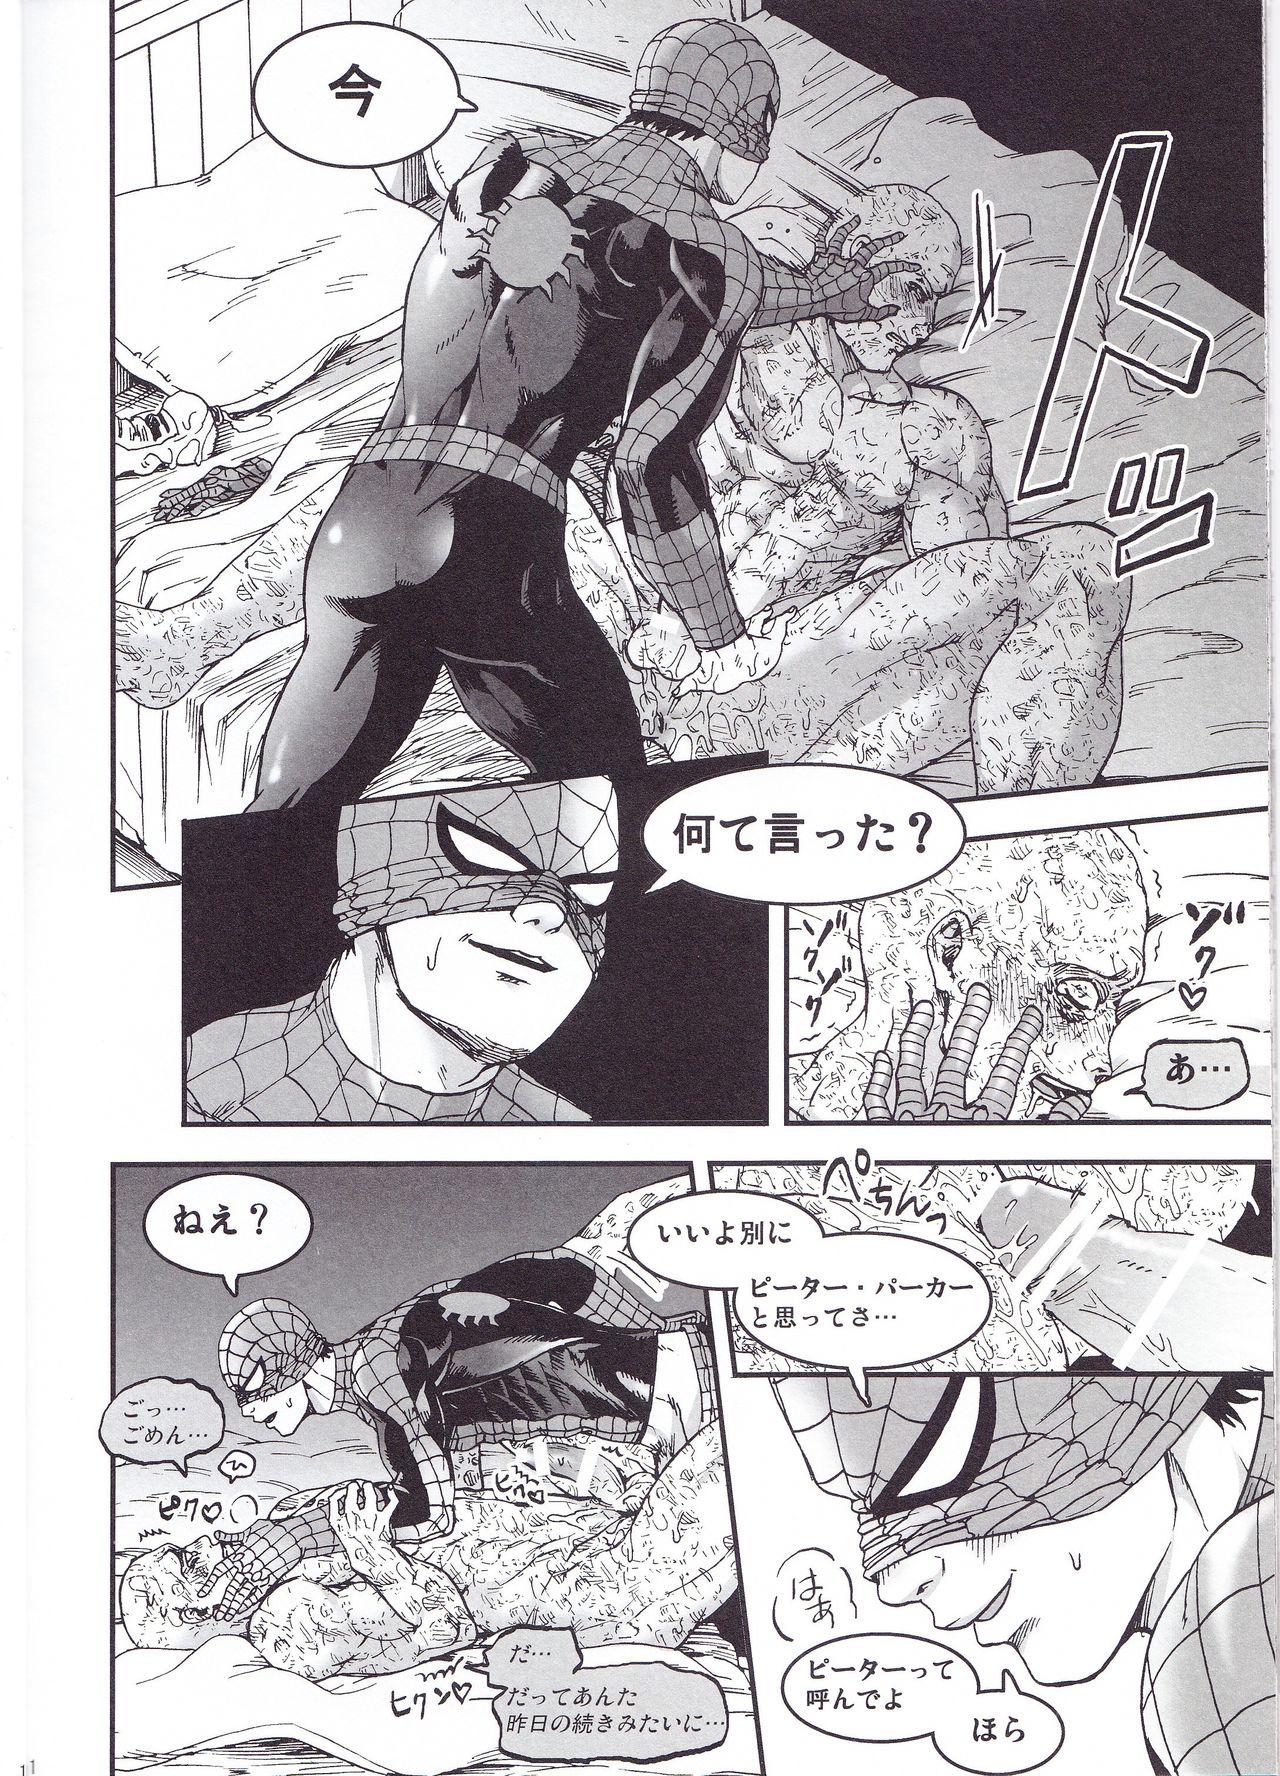 Stepmom THREE DAYS 2-3 - Spider-man Deadpool Venezuela - Page 10